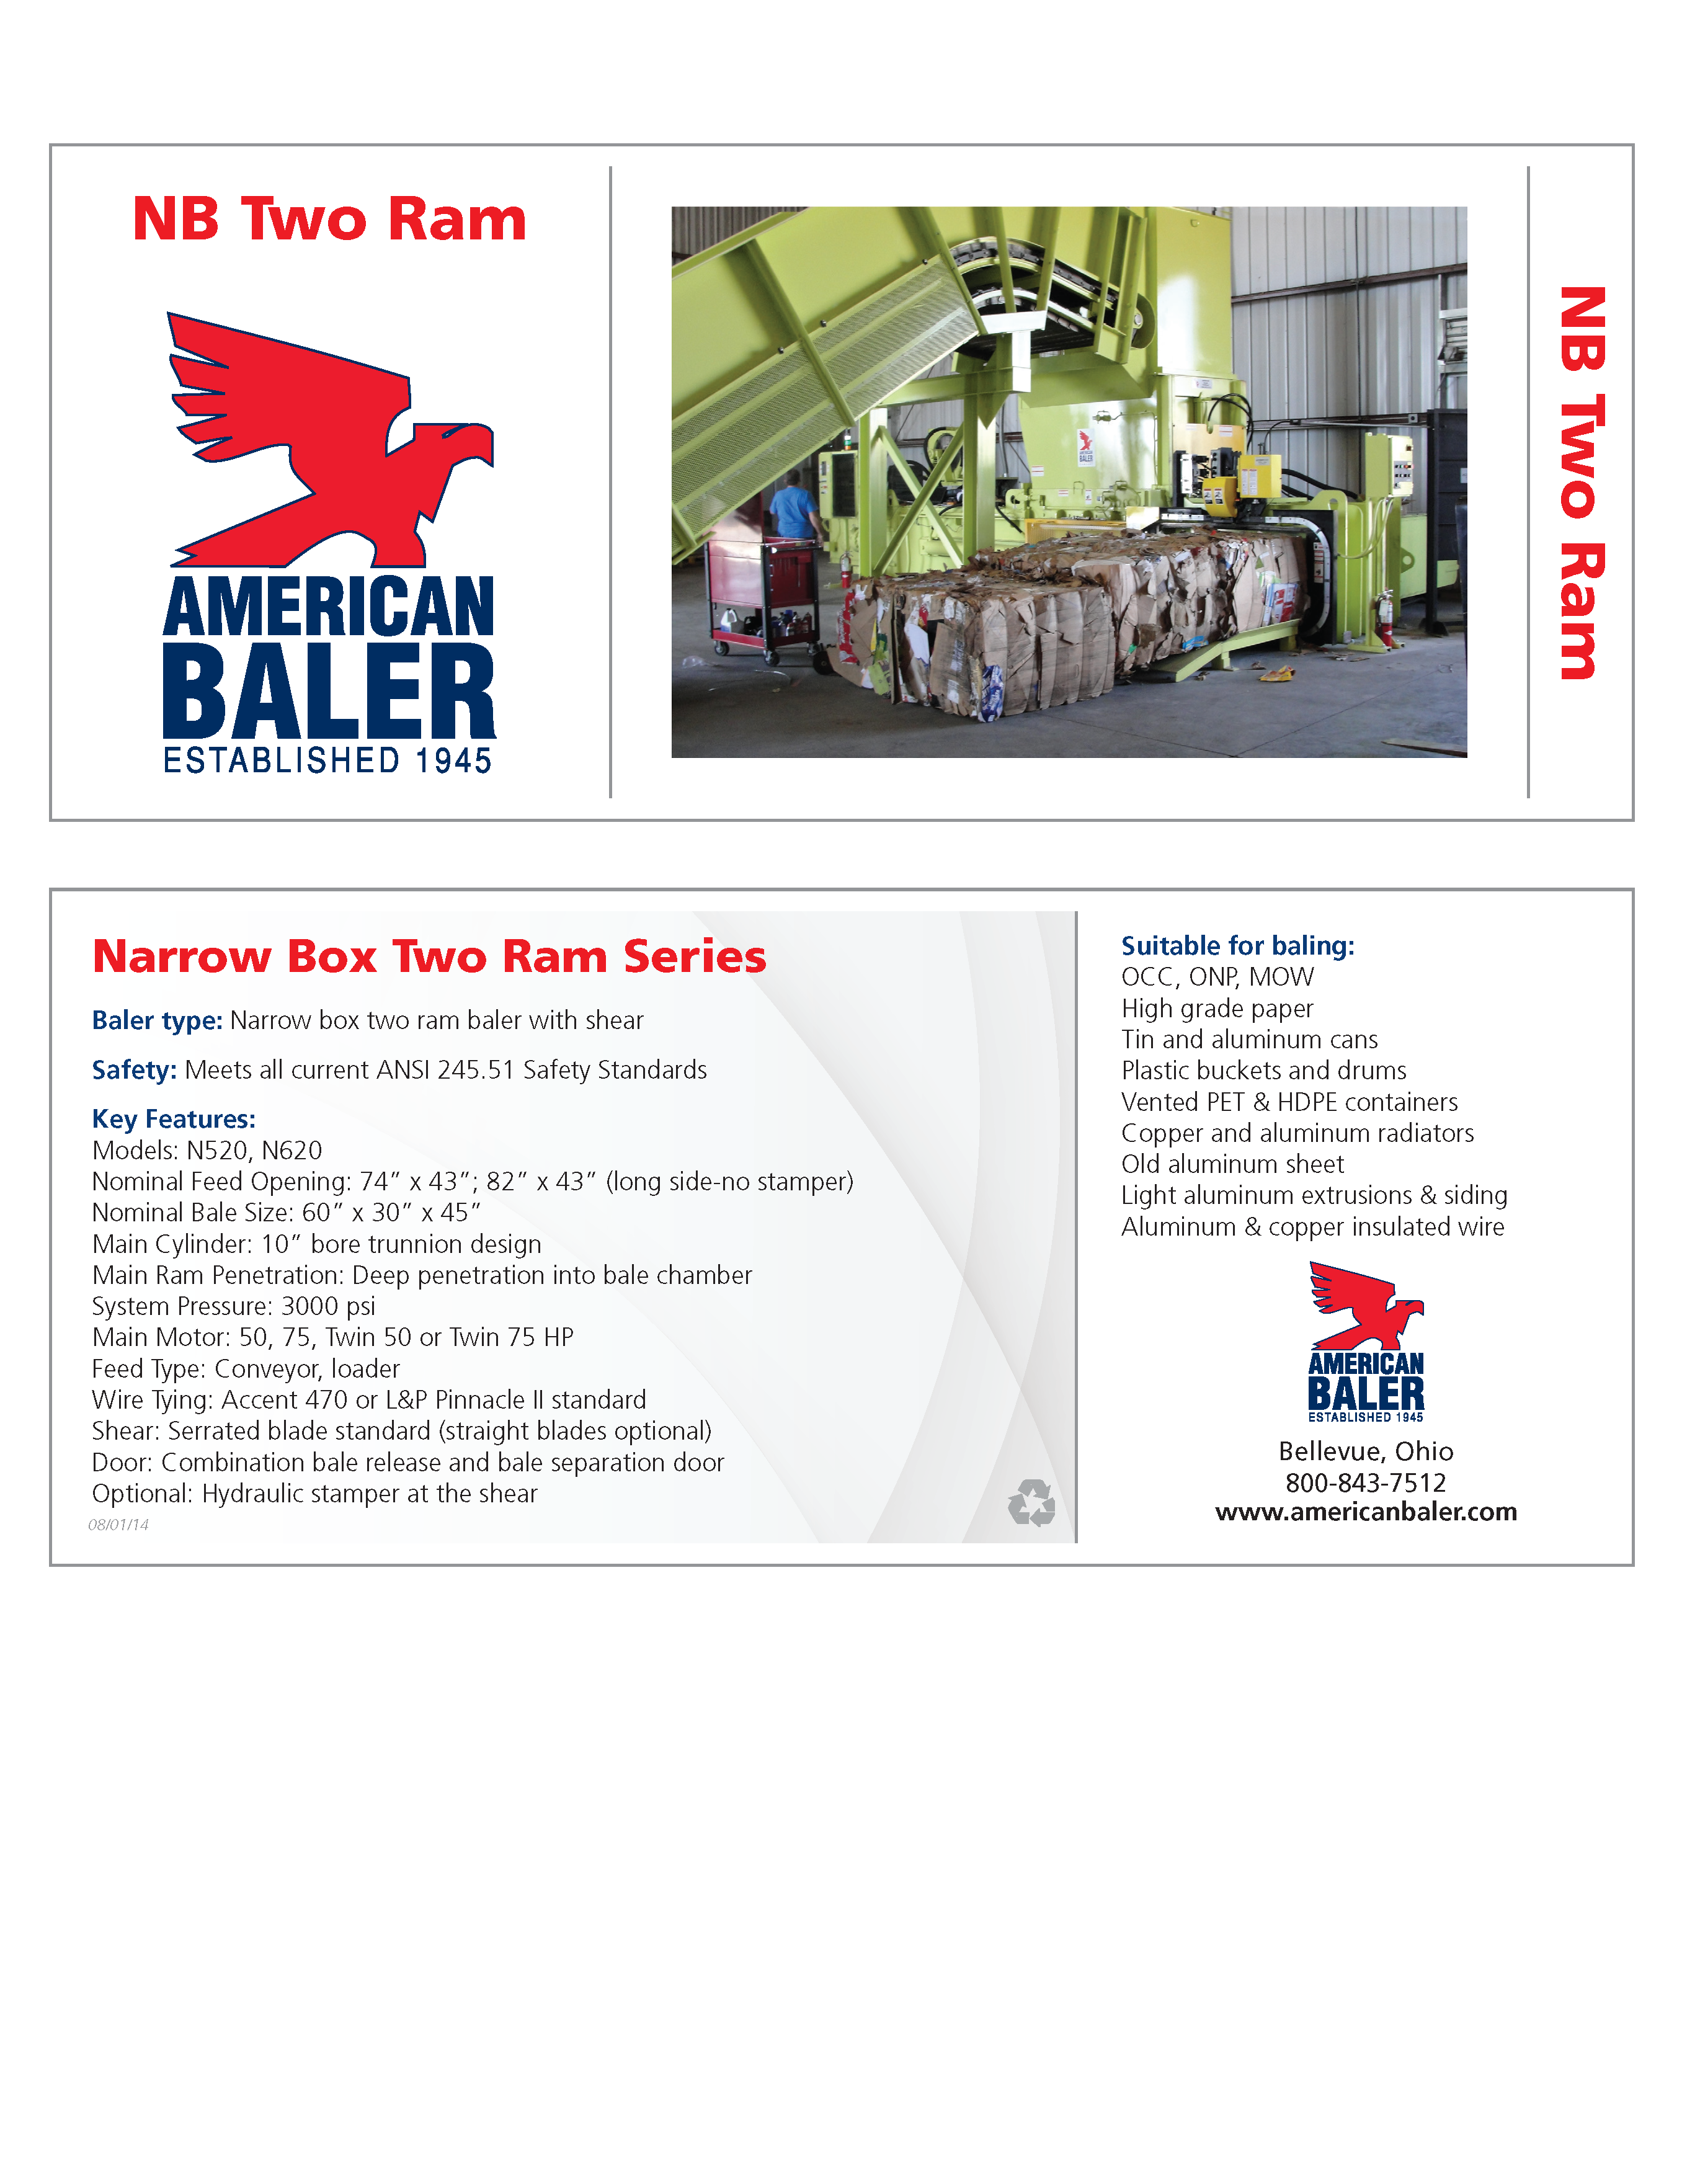 Conozca más de las compactadoras de la Serie NB Series Balers en el folleto de American Baler.